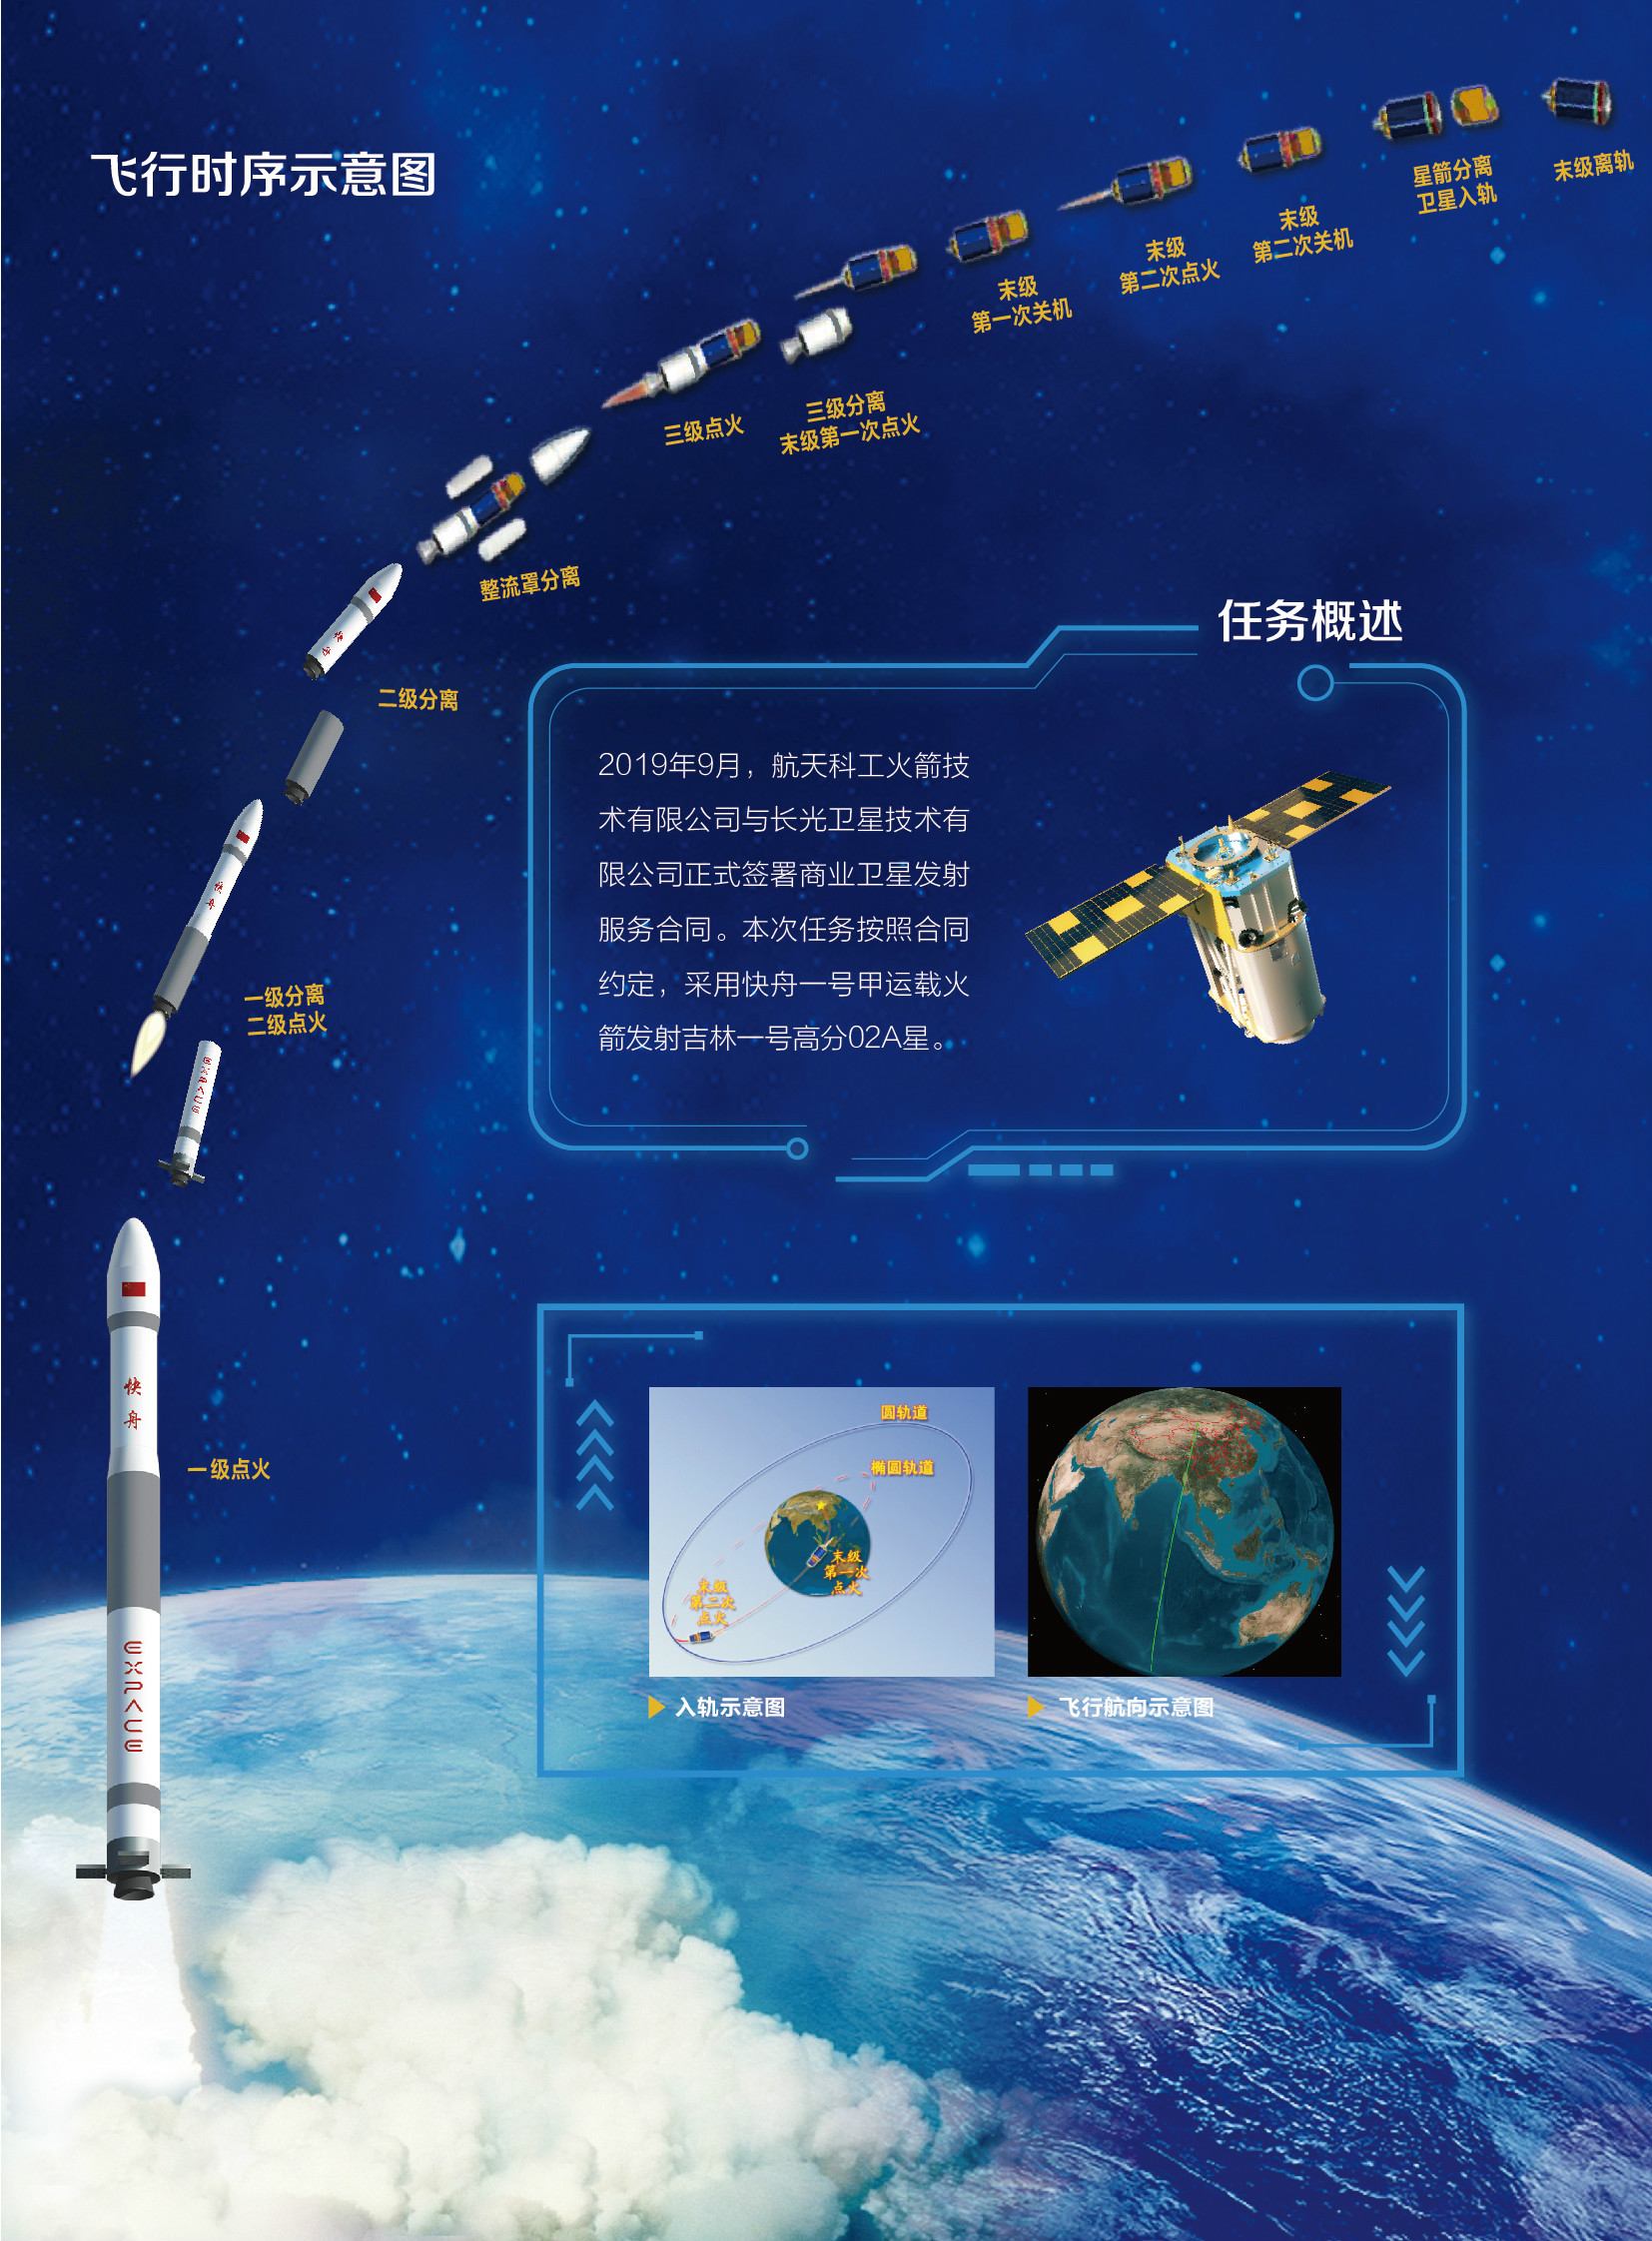 中国运载火箭最快纪录保持者快舟发射背后